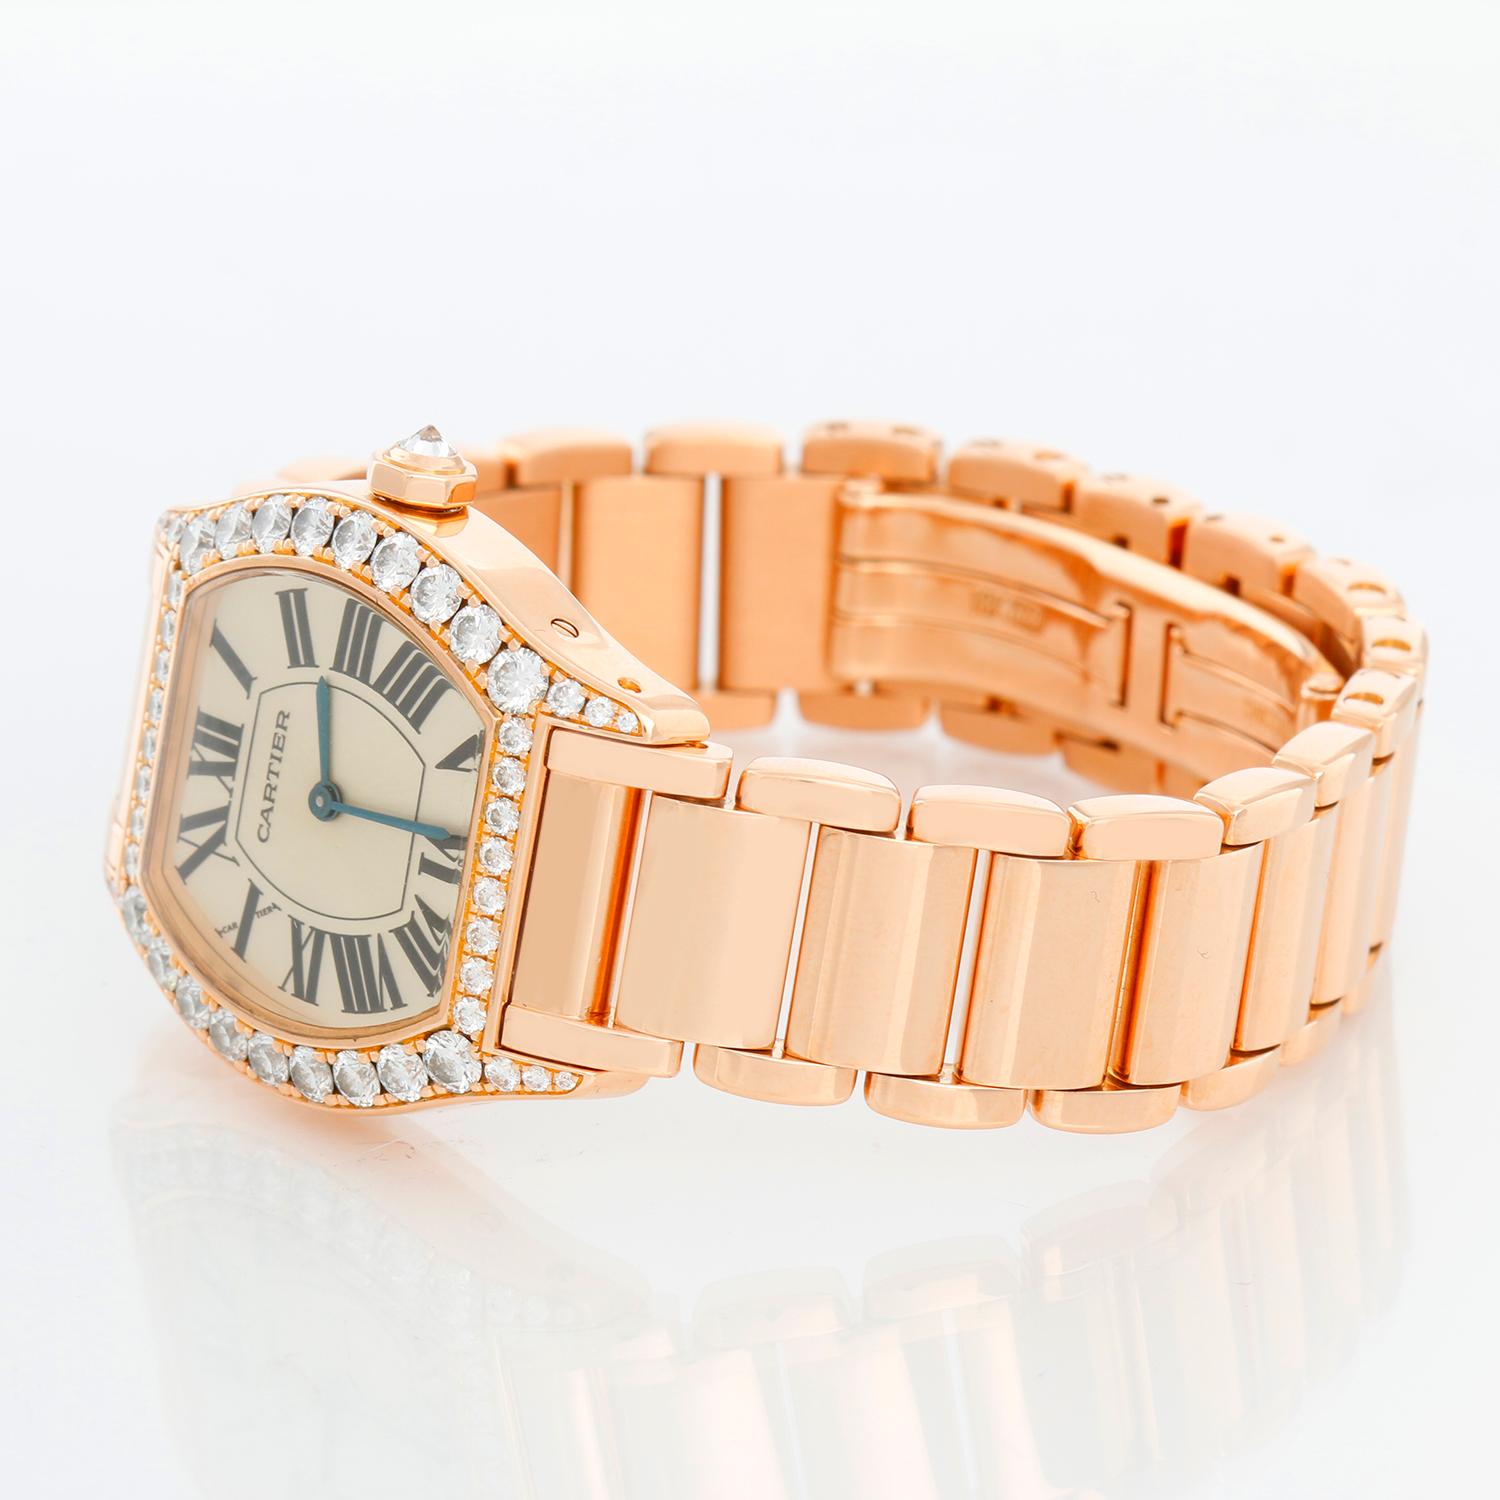 Cartier Tortue Ladies Rose Gold Diamond Watch Ref 2645 - Remontage manuel. Boîtier en or rose avec diamants ( 20 mm x 27mm). Cadran argenté avec chiffres romains. bracelet en or rose 18K ; convient à un poignet de 6 1/2 pouces. D'occasion, avec